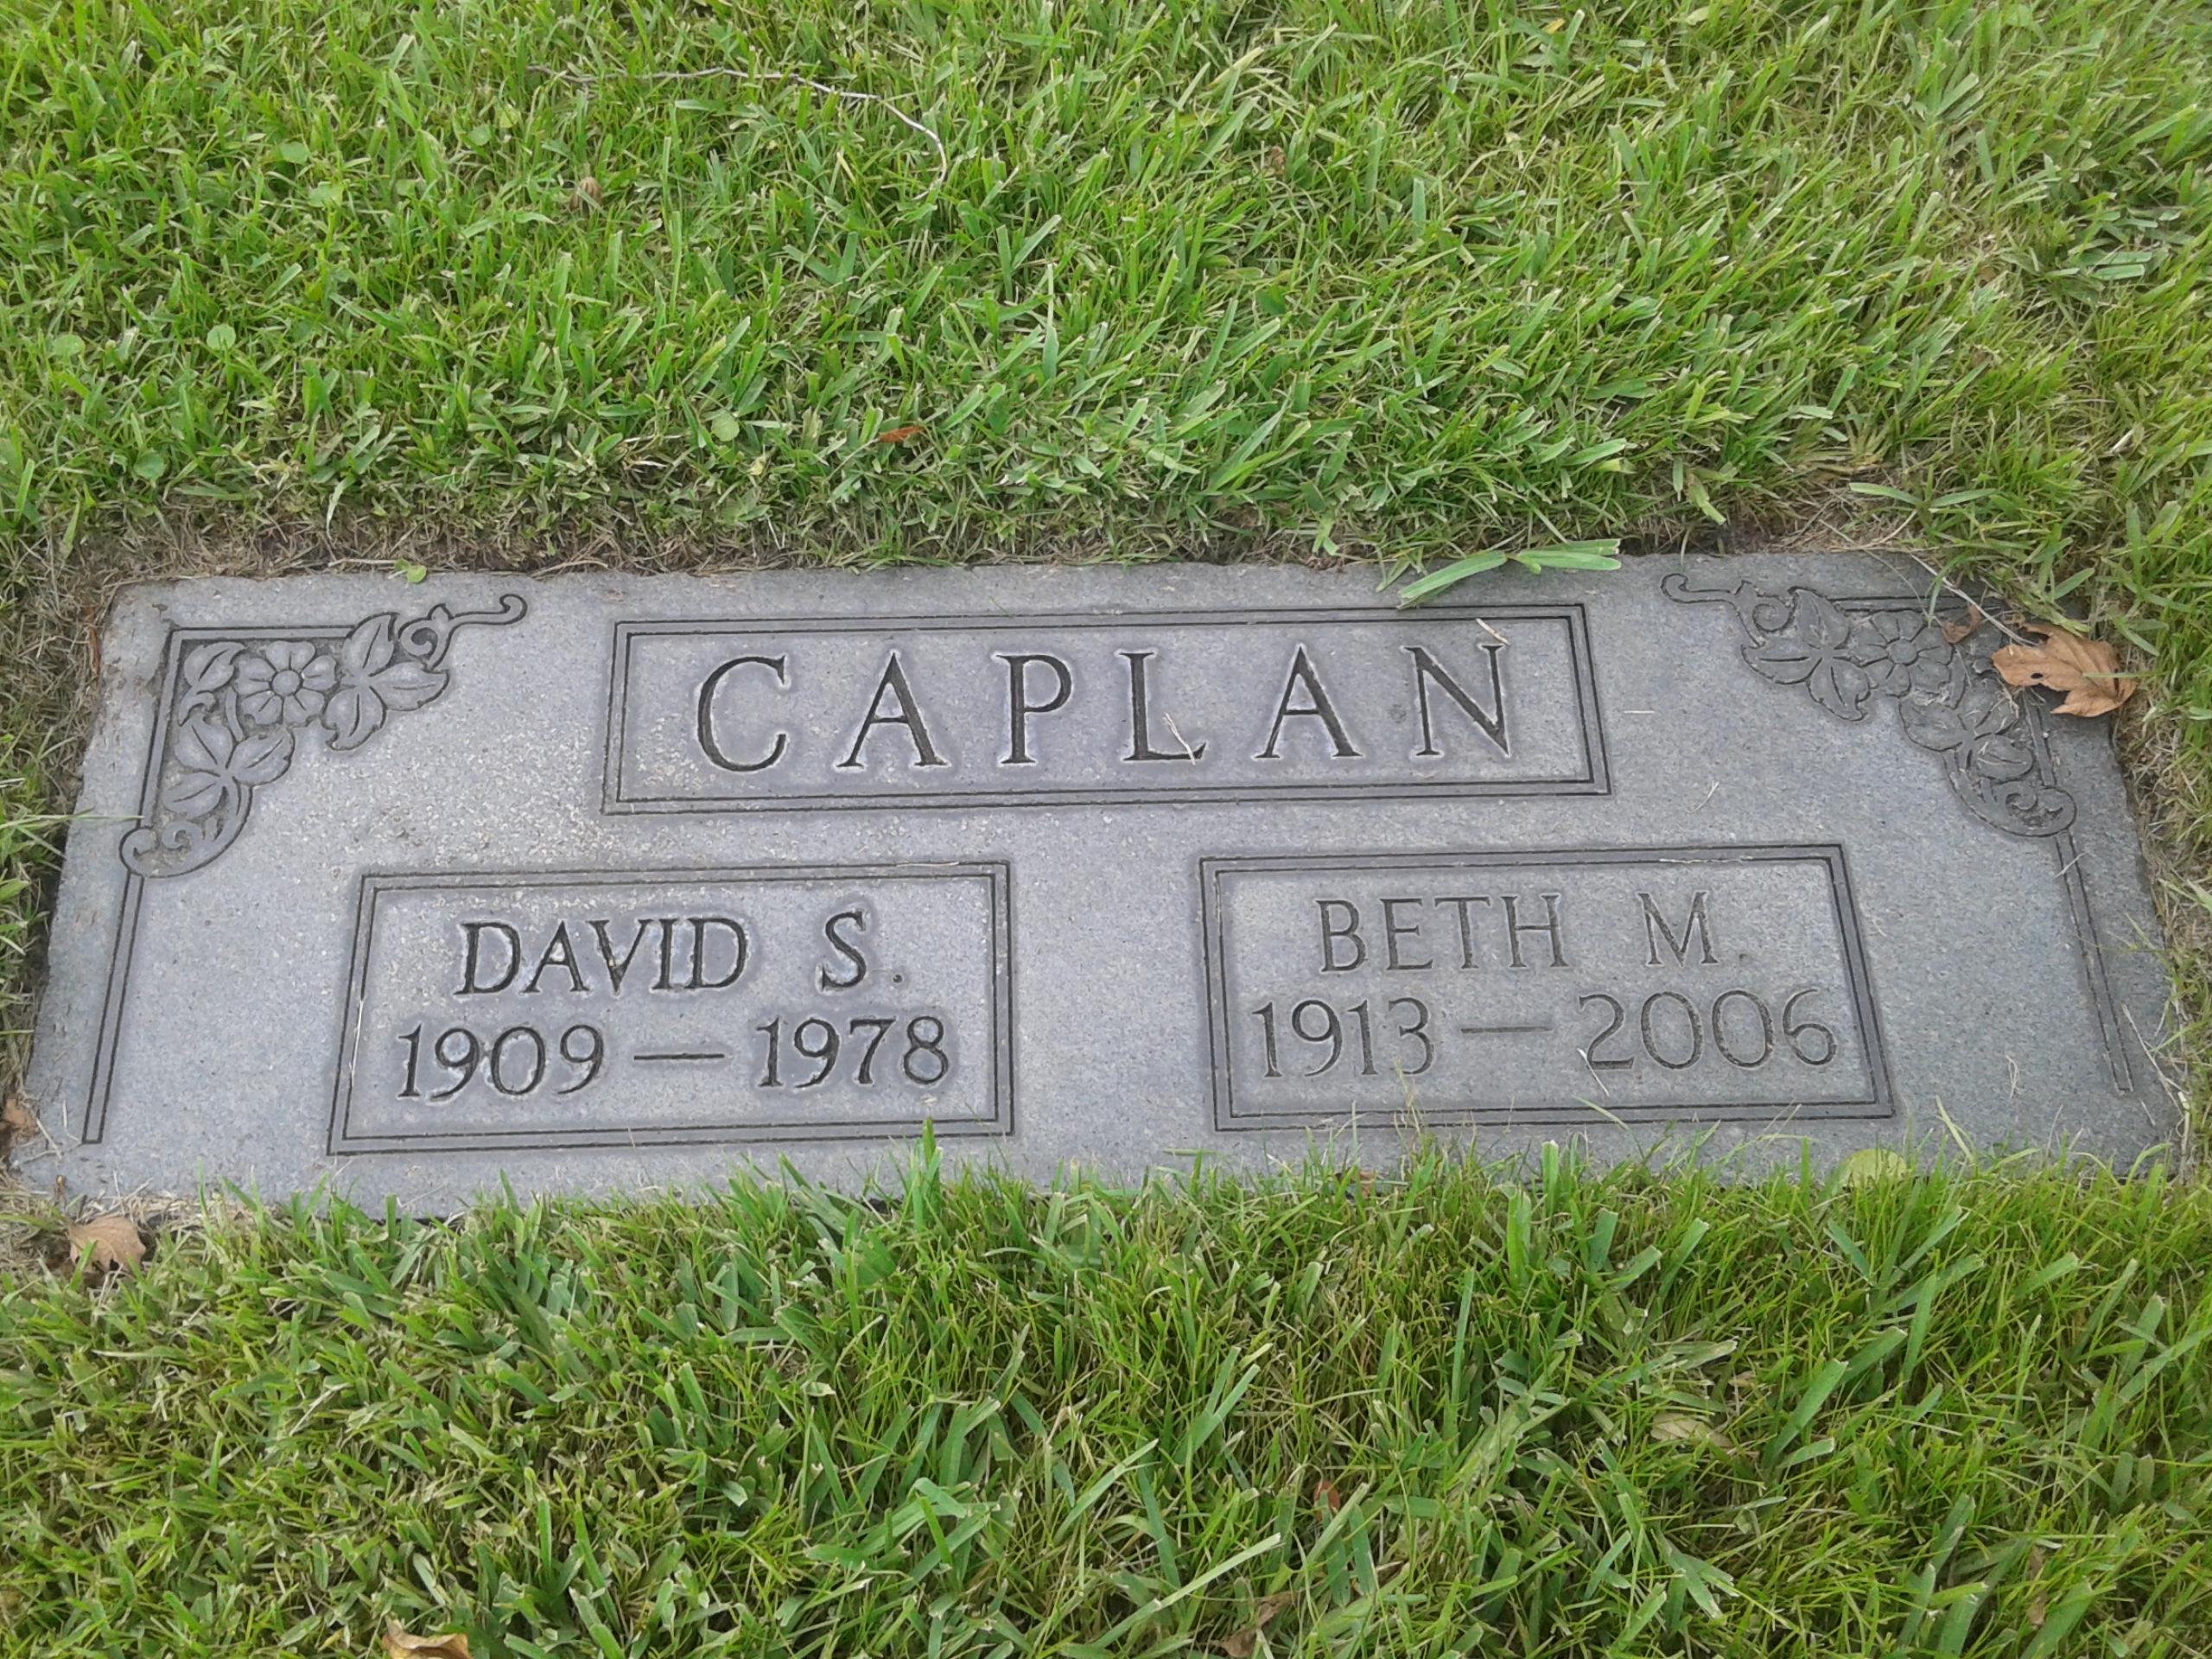 David S Caplan